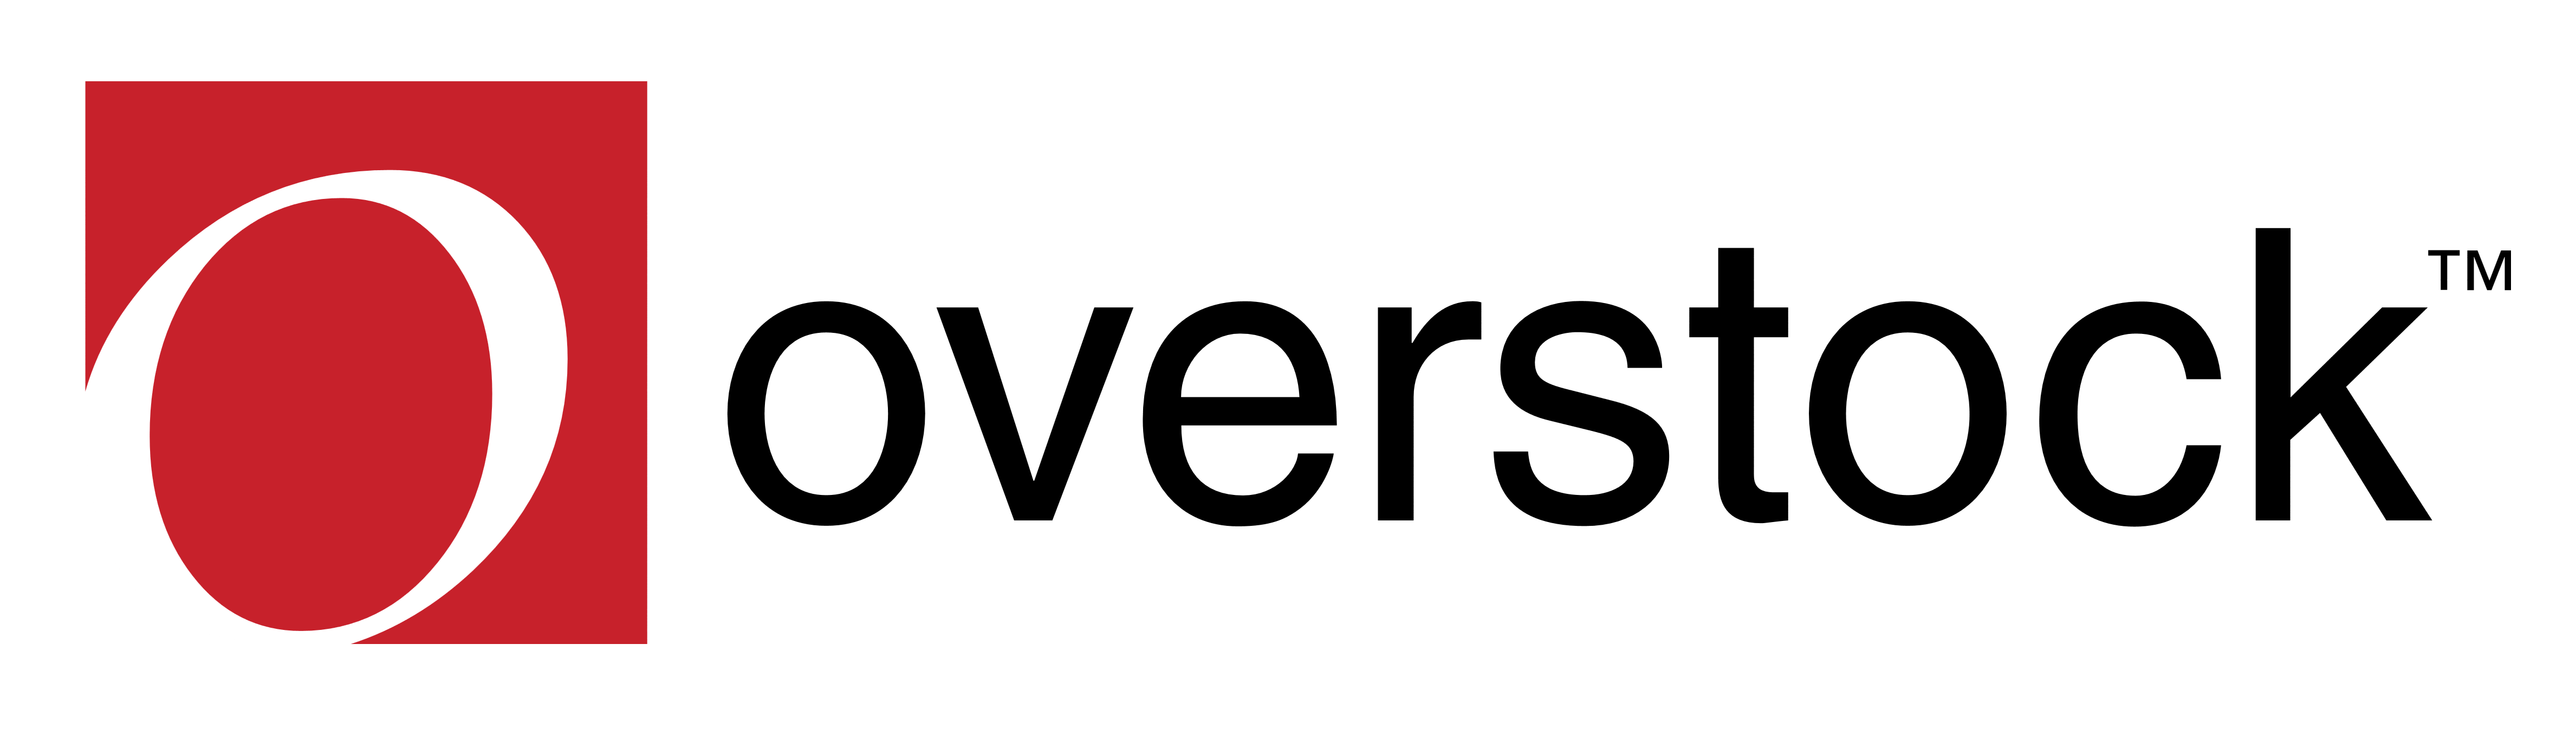 Overstock Logo - Overstock – Logos Download